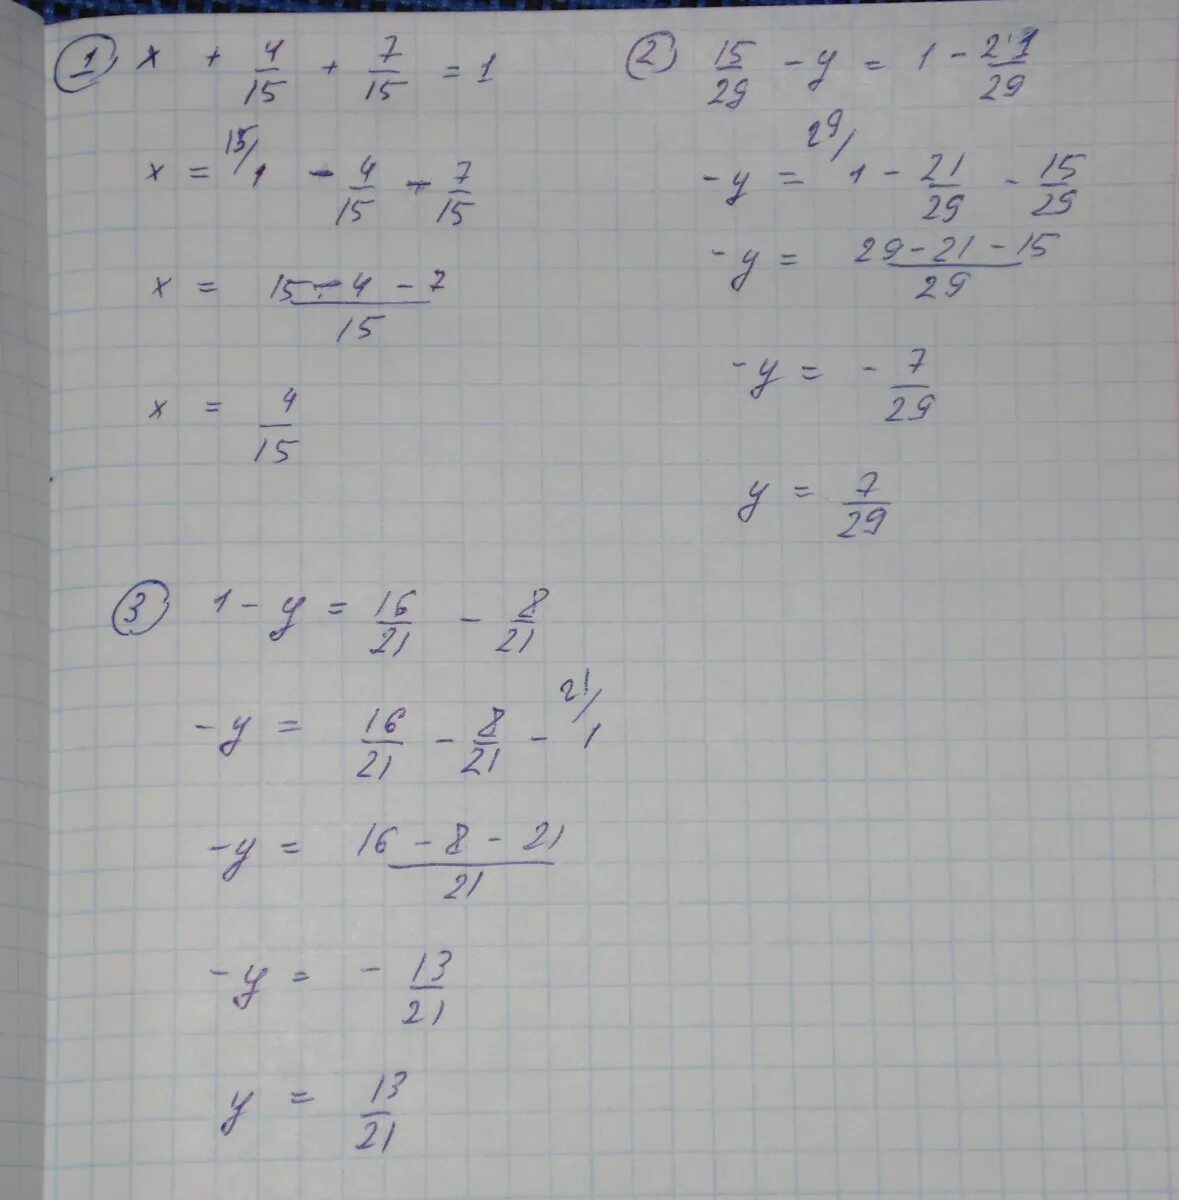 5 7 21 x. Х:7+15=15. Решение уравнения 15х-8х=21. Решение уравнения 1/4*x=1 1/7. Решение уравнения 16-x=.